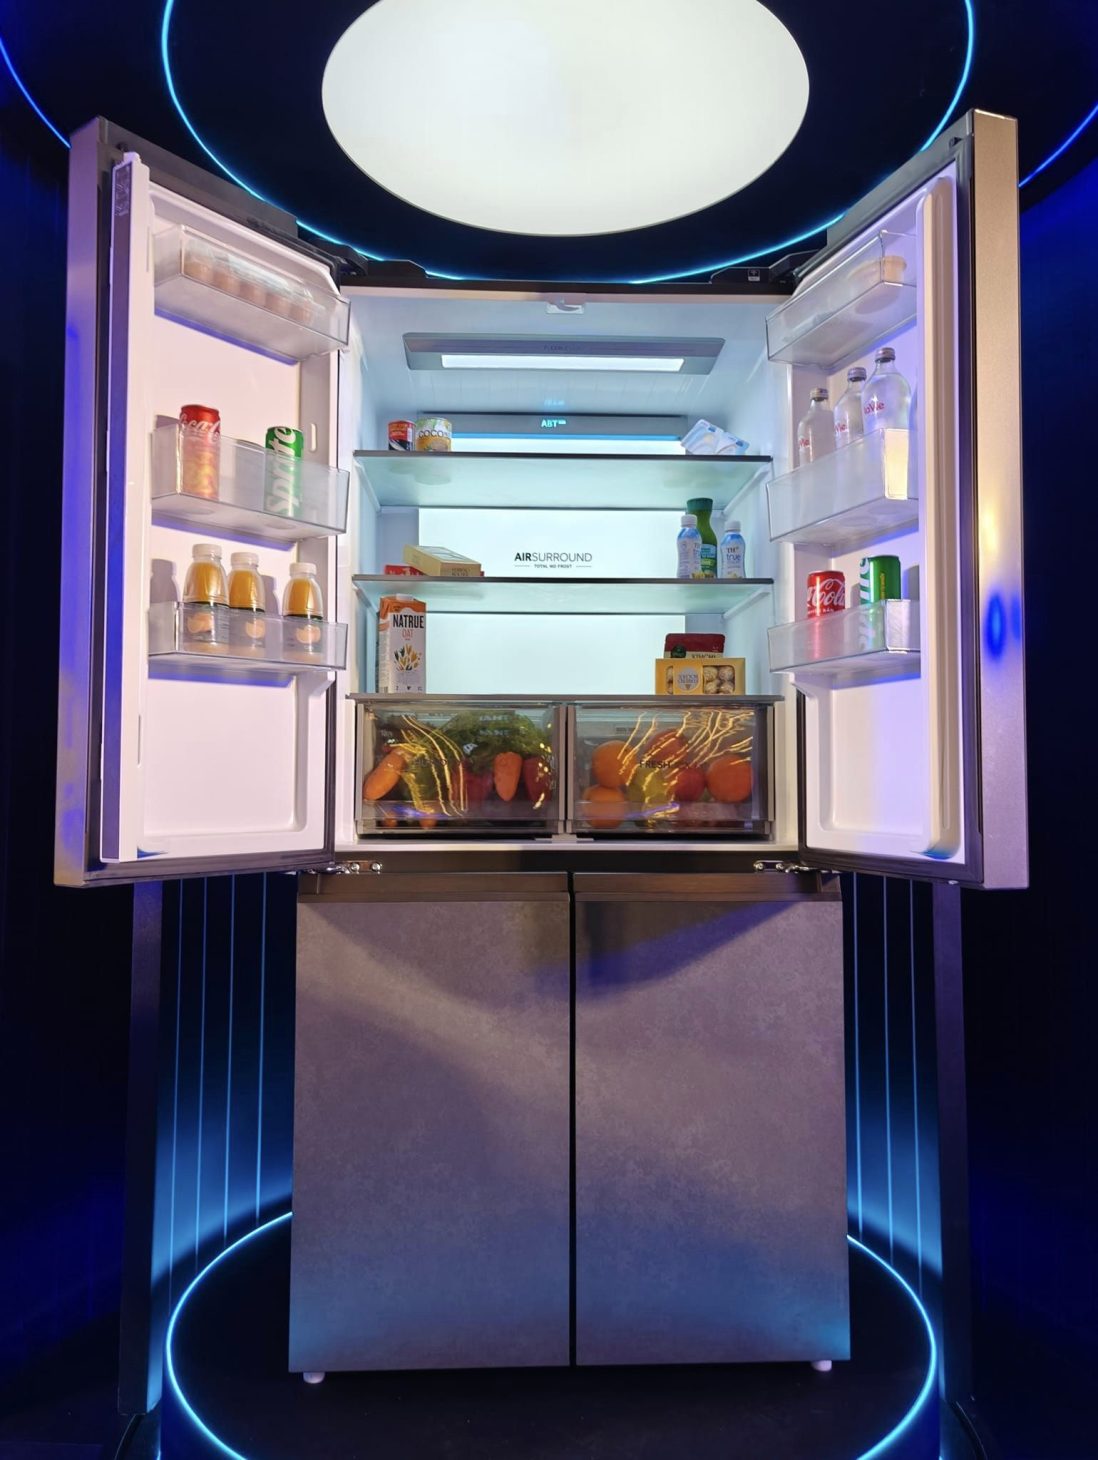 AQUA ViewFresh, tủ lạnh thông minh 4 cửa thiết kế đẹp, giá từ 30 triệu đồng - 421605887 7889455487735707 2424788324050550091 n